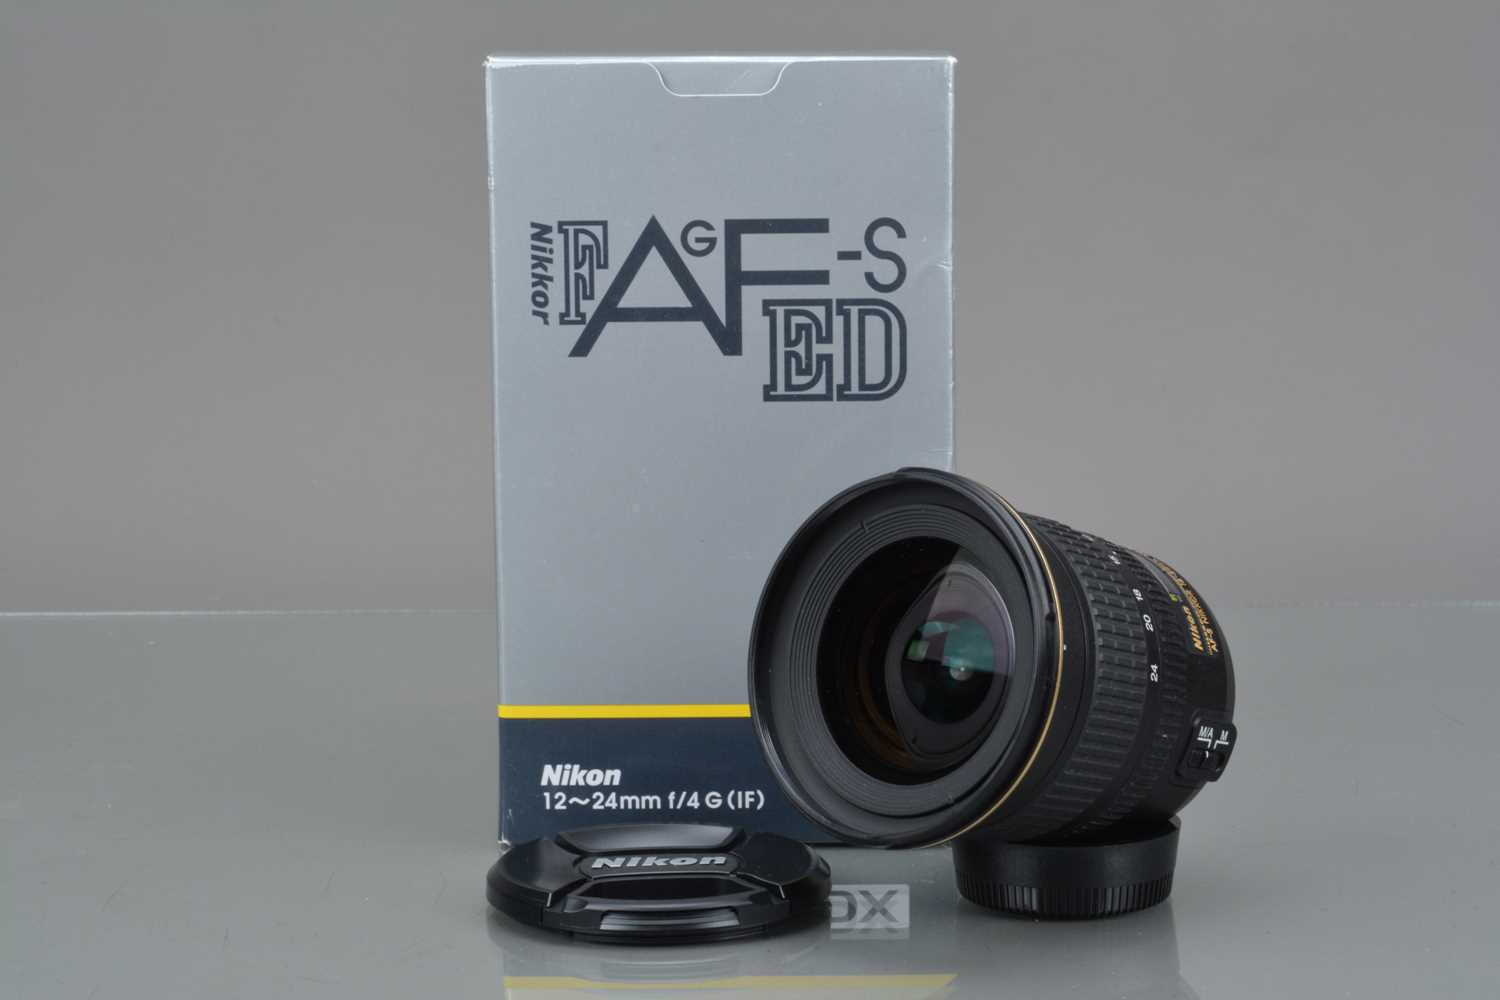 A Nikon DX AF-S Nikkor 12-24mm f/4 ED IF Lens, - Image 3 of 3